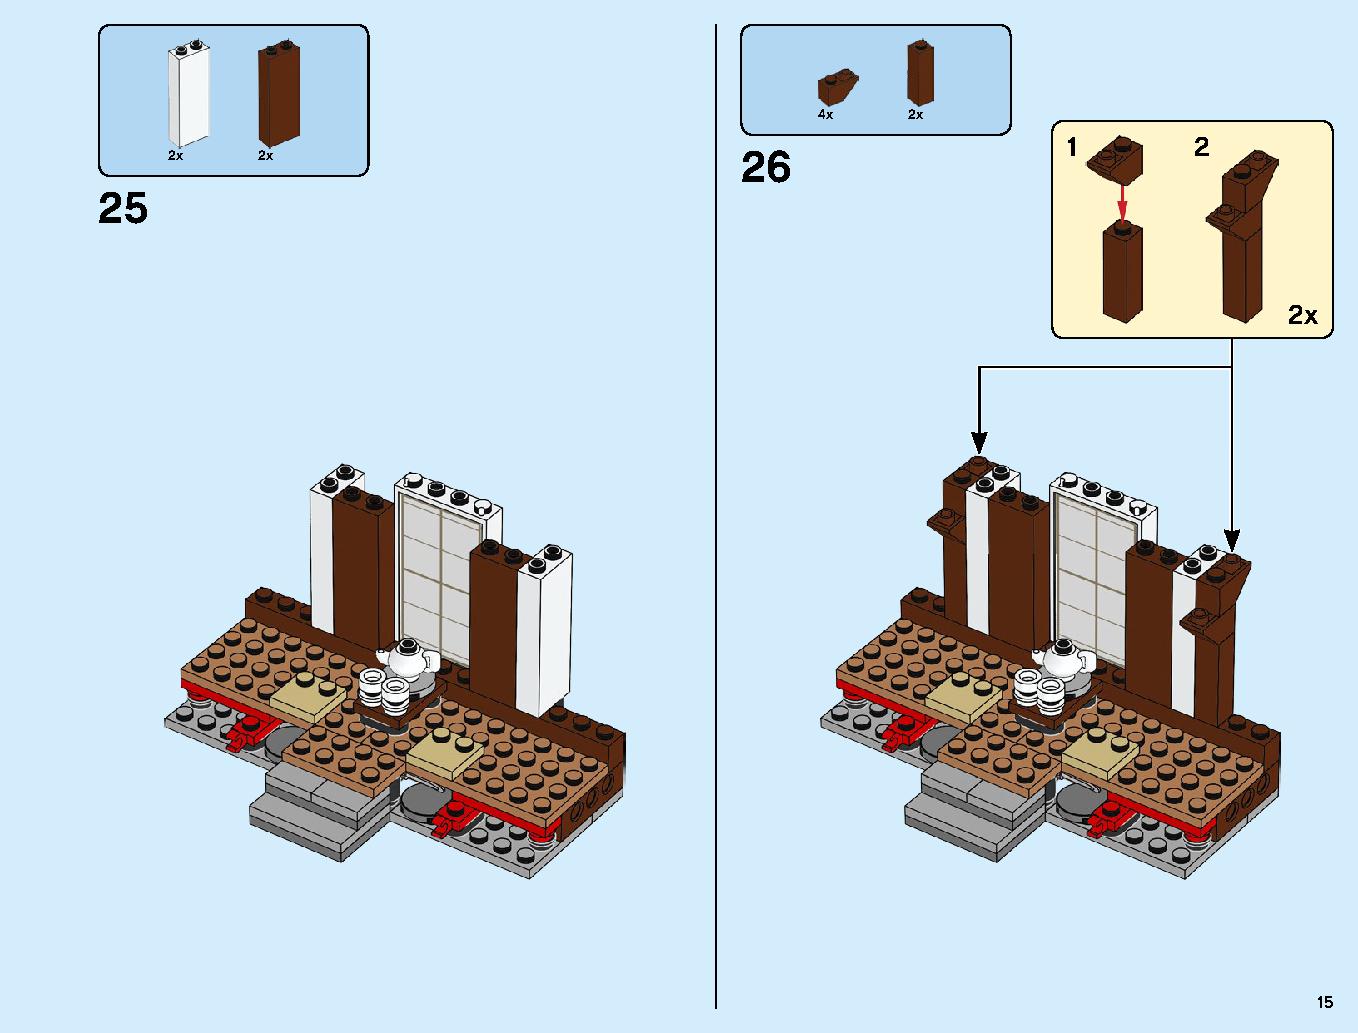 ニンジャ道場 70670 レゴの商品情報 レゴの説明書・組立方法 15 page